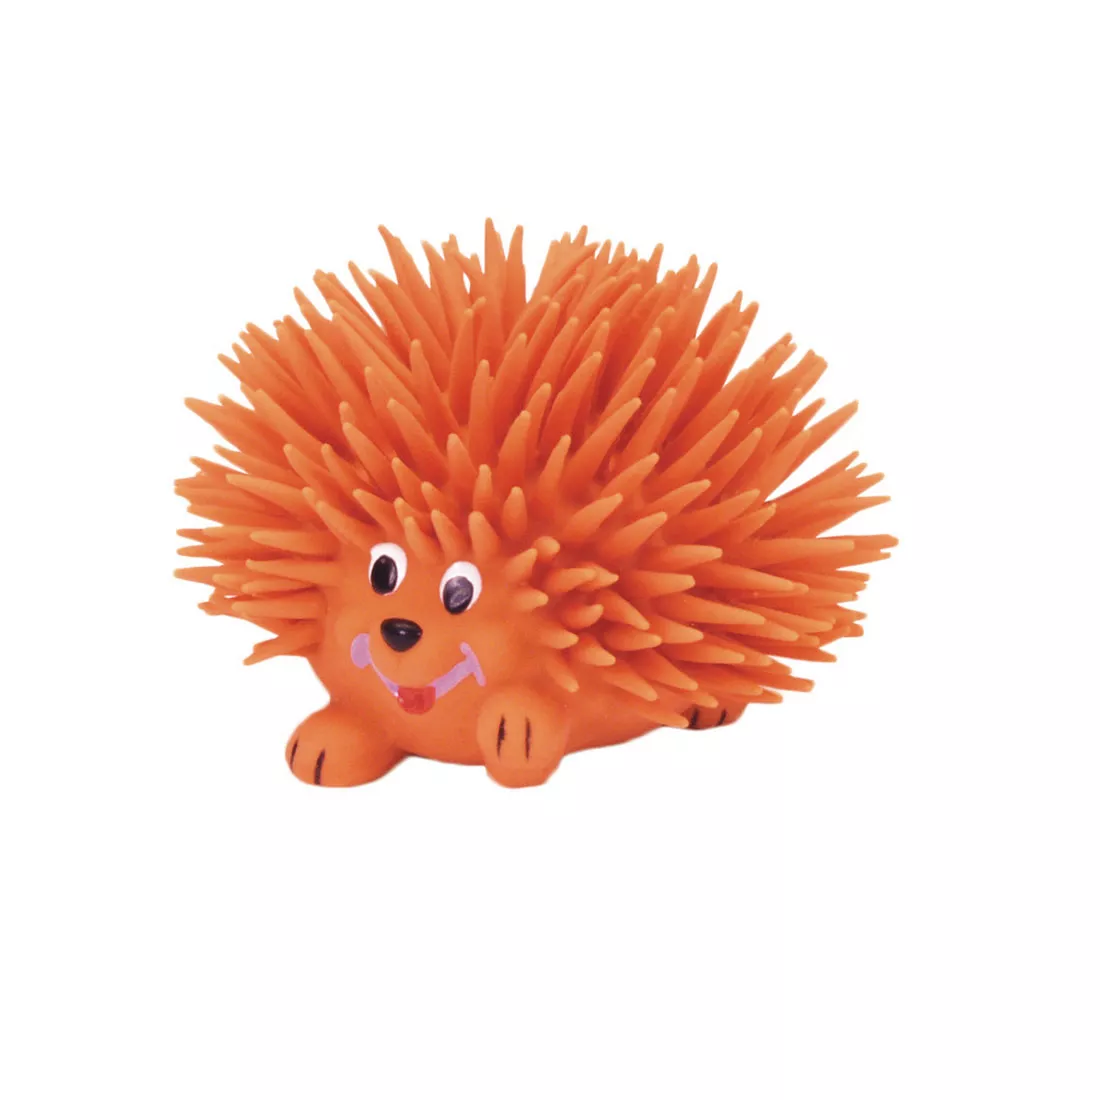 Rascals® by Coastal® 3" Latex Medium Hedgehog Dog Toy